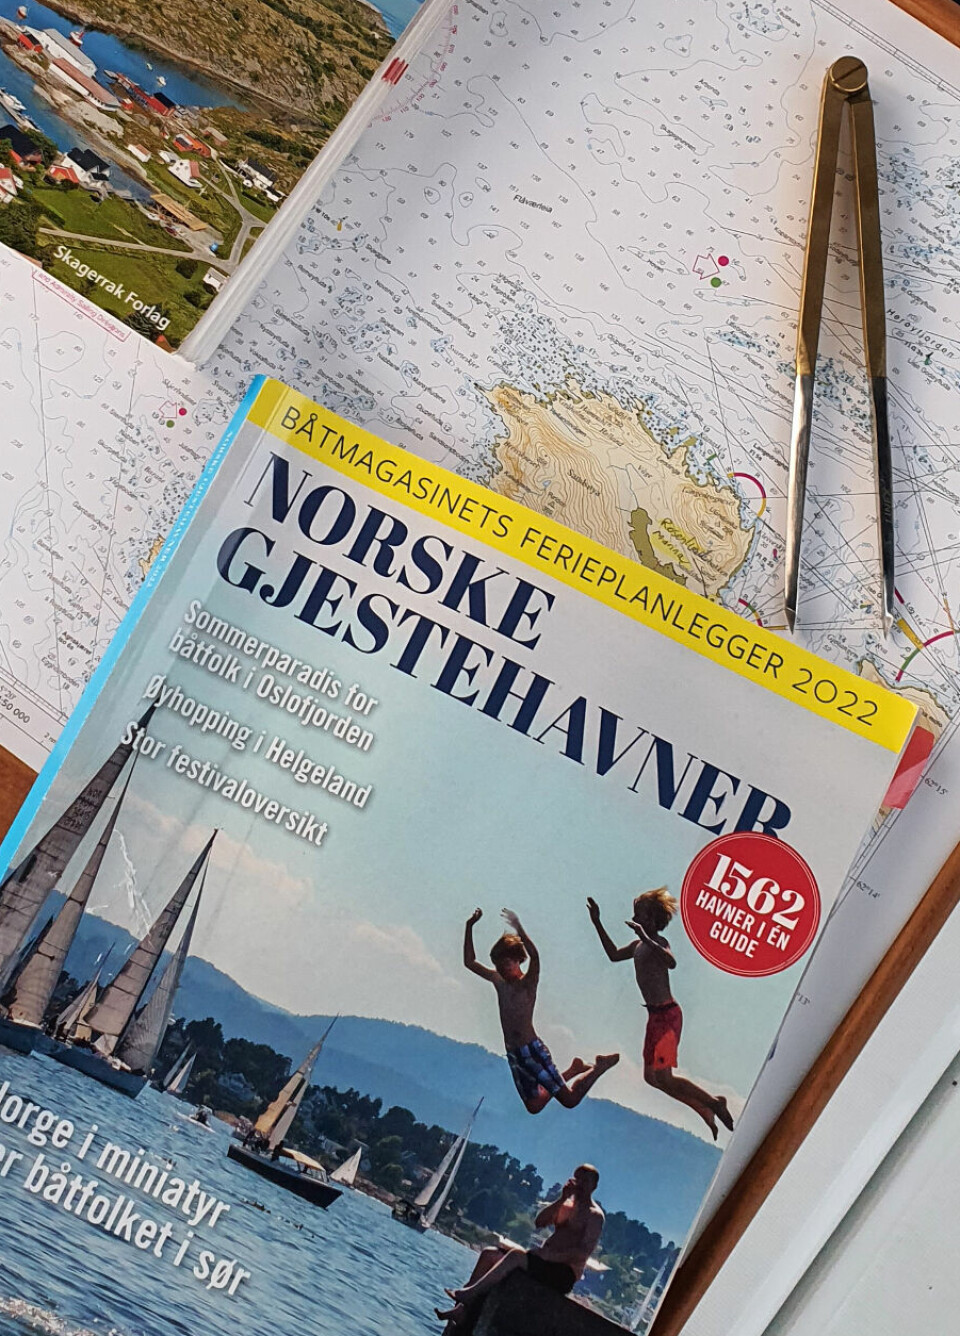 PLANLEGGING: – Båtmagasinets «Norske gjestehavner» er et must i planleggingen, mener Hans-Petter Sandseth.